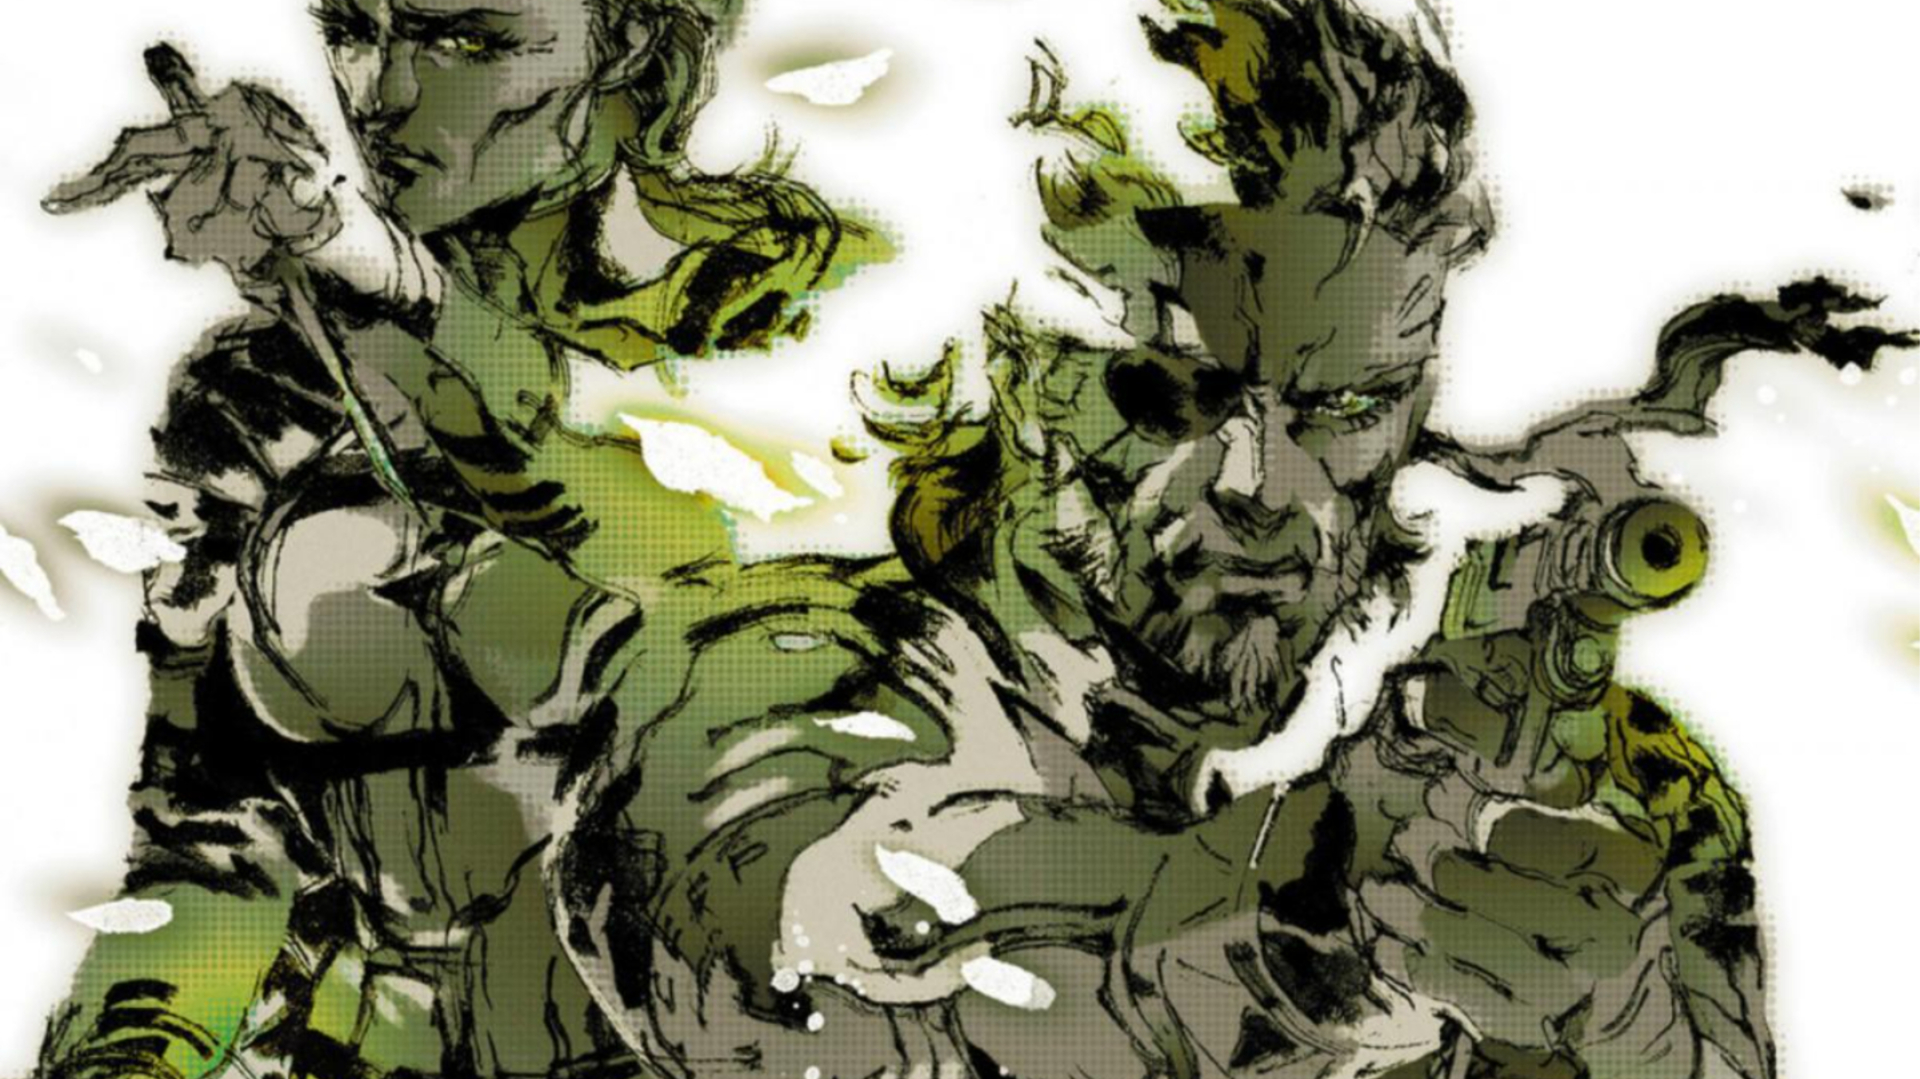 Arte promocional de MGS 3 de The Boss e Naked Snake com suas armas em punho.